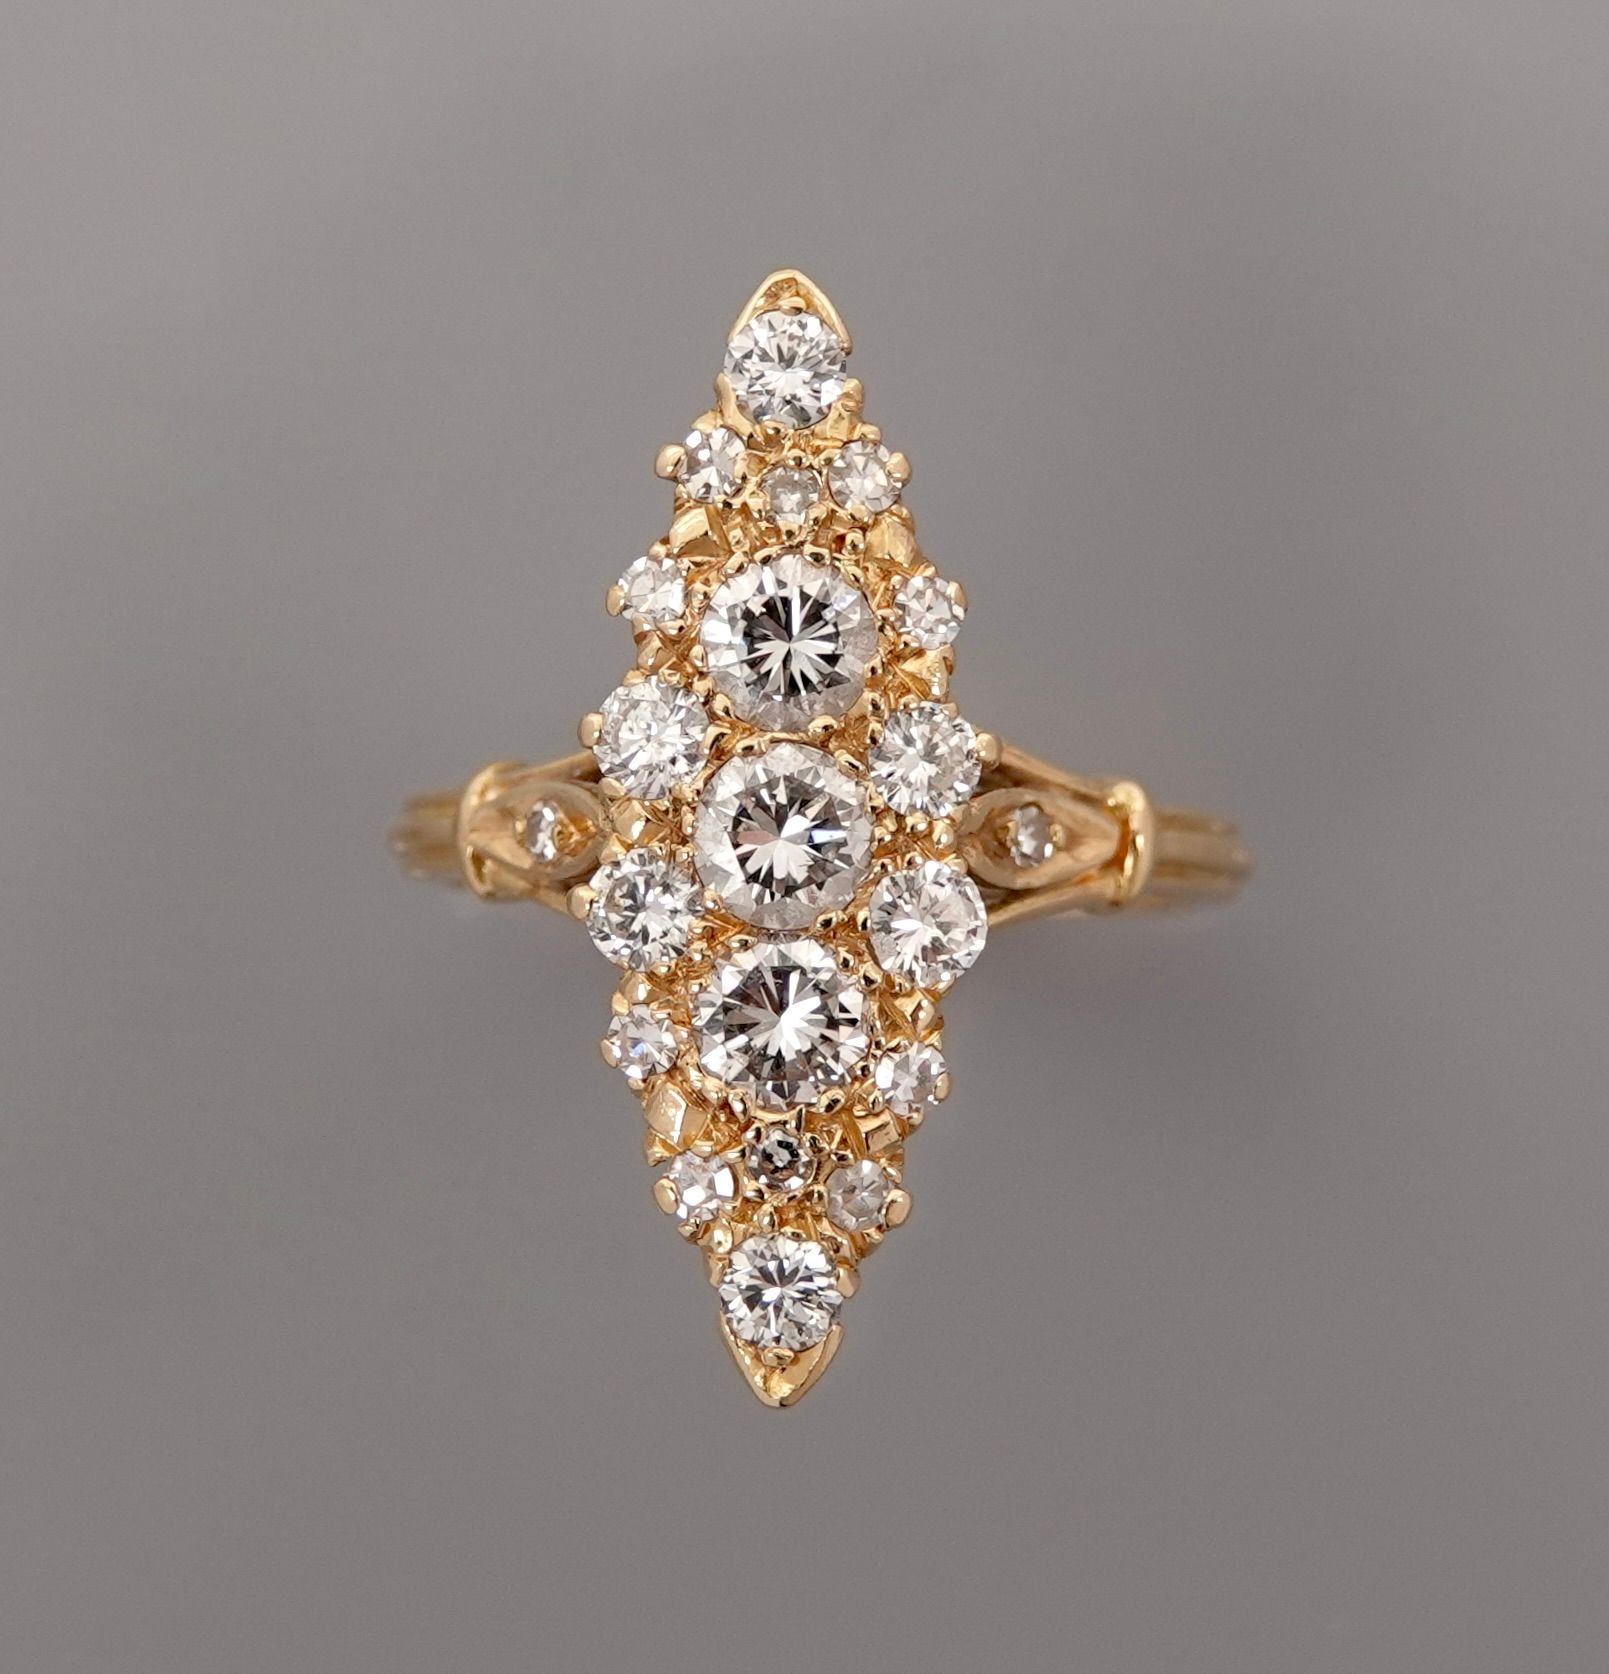 Null 750毫米黄金榄尖形戒指，两颗钻石掌心之间布满钻石，总重约1.60克拉，长度2.5厘米，尺寸：52，重量：5.5克，毛重。